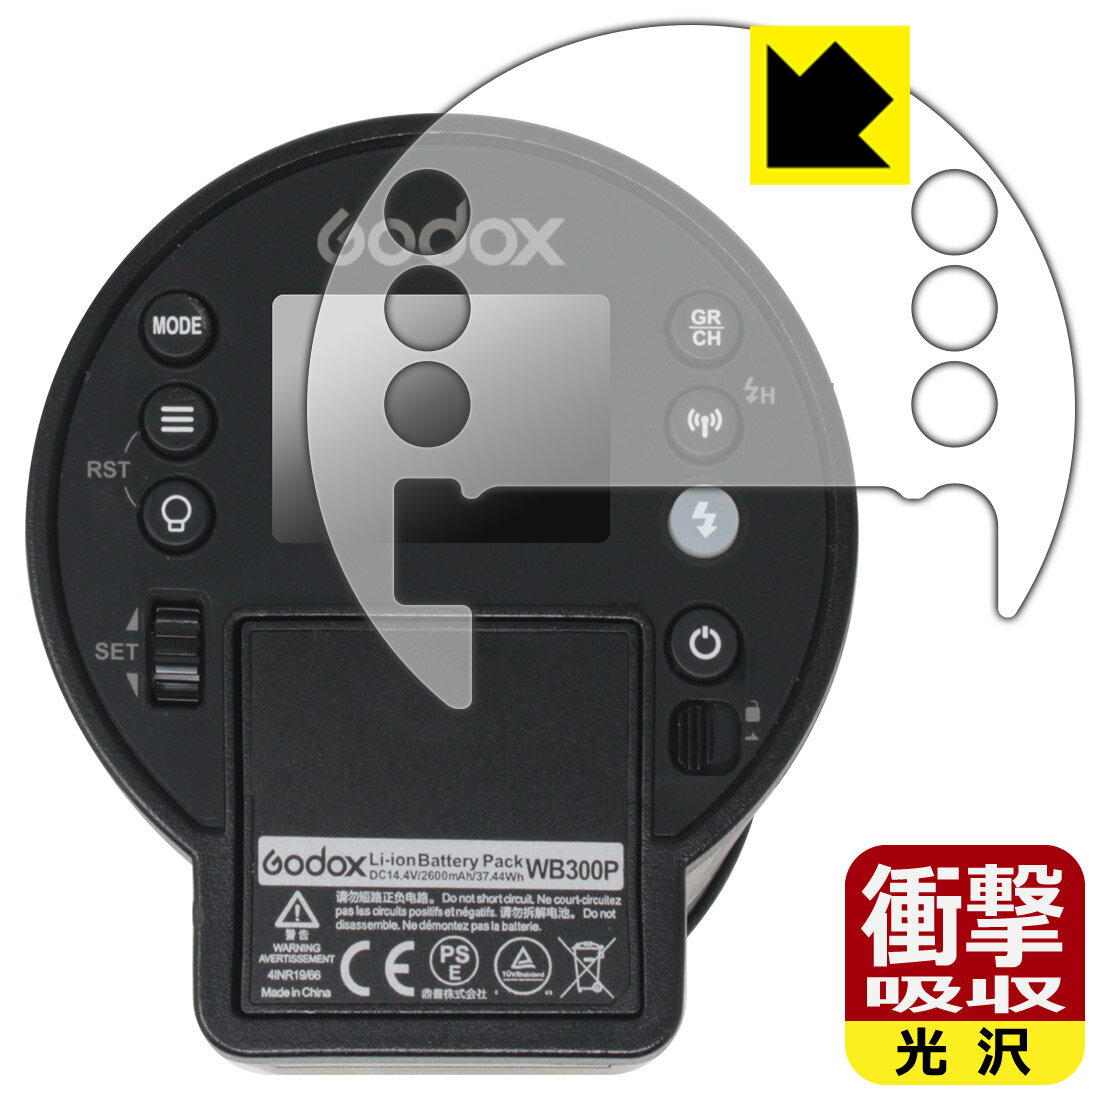 PDA工房 GODOX AD300Pro 対応 衝撃吸収[光沢] 保護 フィルム 耐衝撃 日本製 日本製 自社製造直販